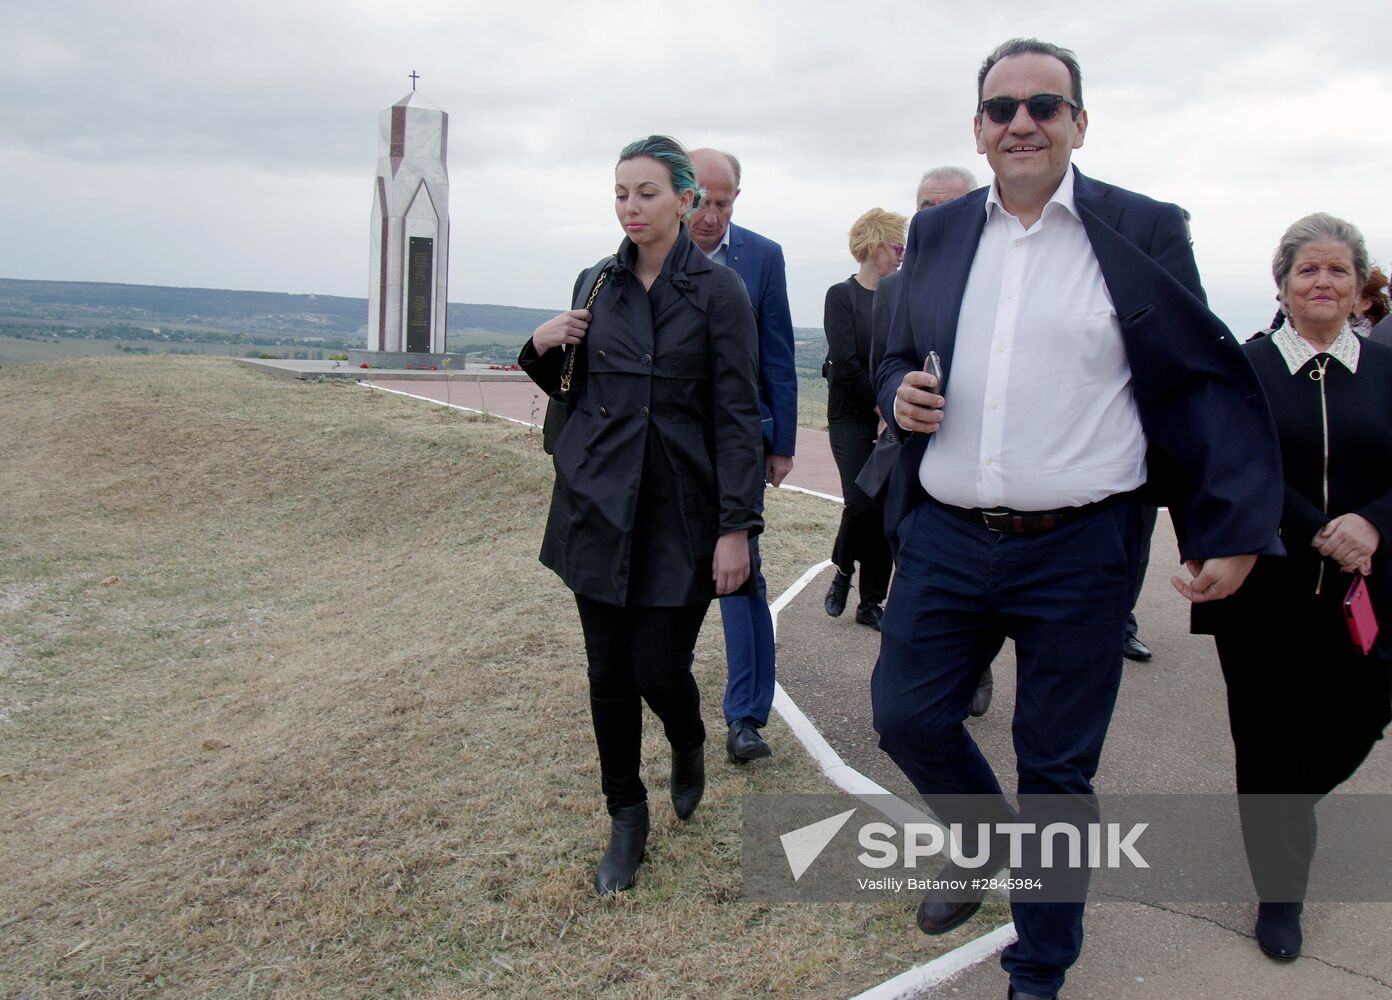 Italian MPs visit Crimea